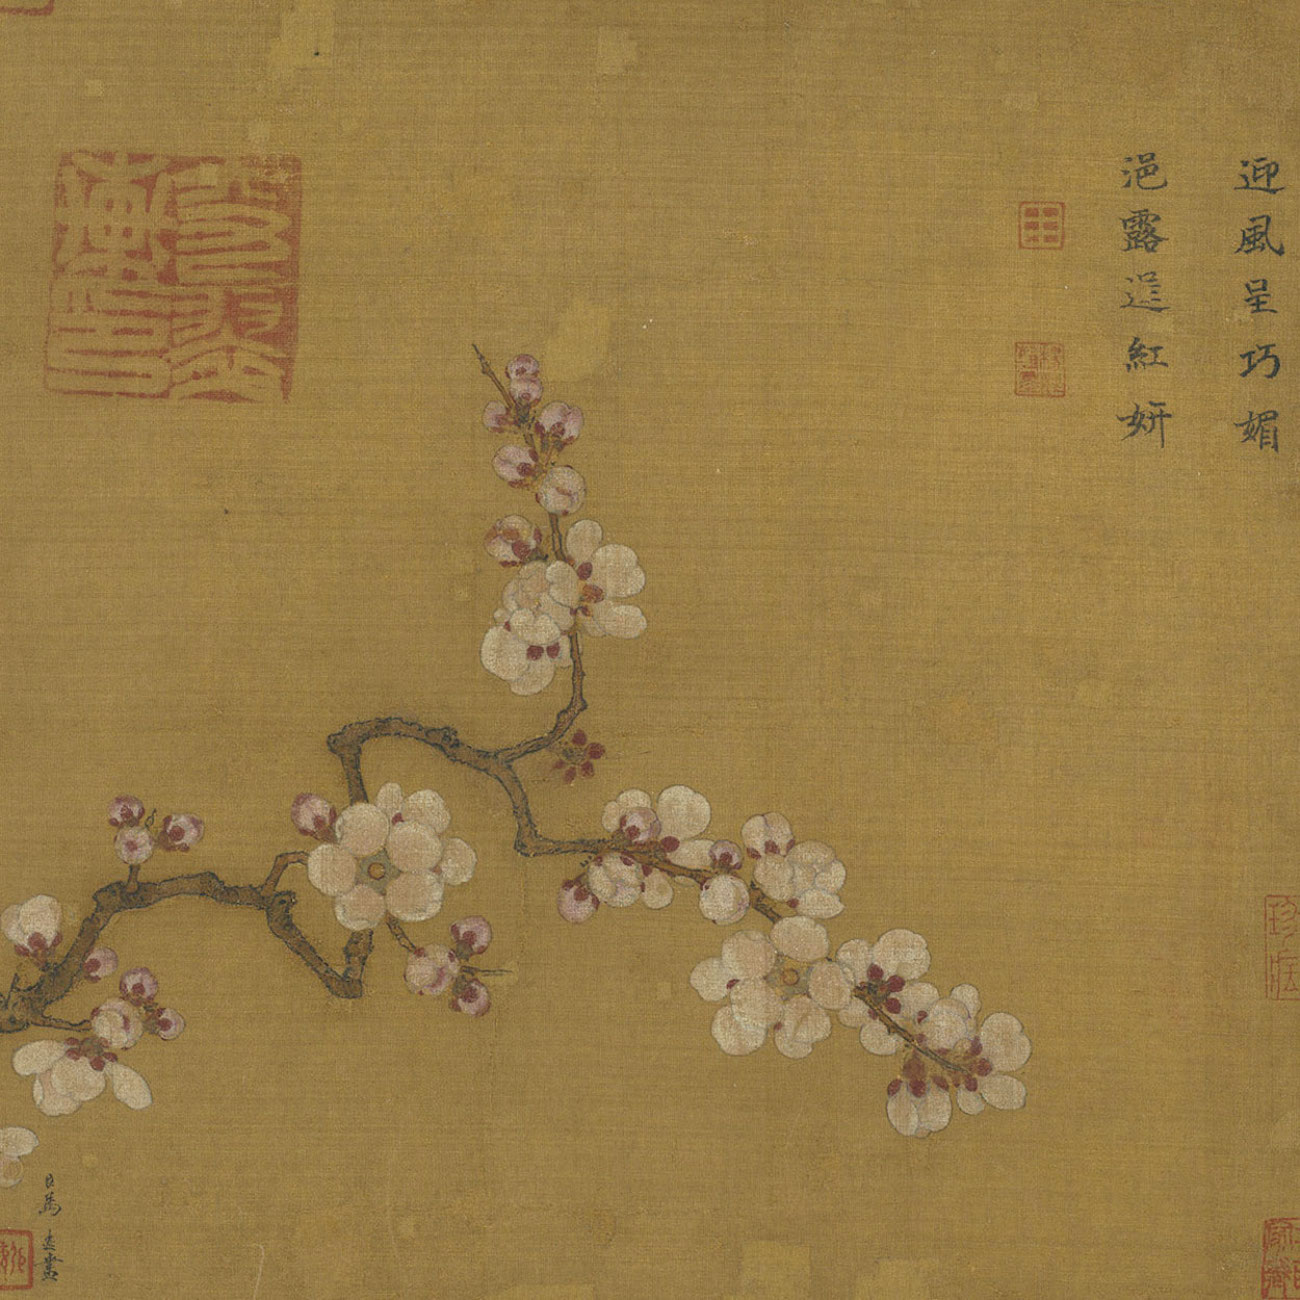 アンズの花 by Ma Yuan - 1202 - 25.8 x 27.3 cm 